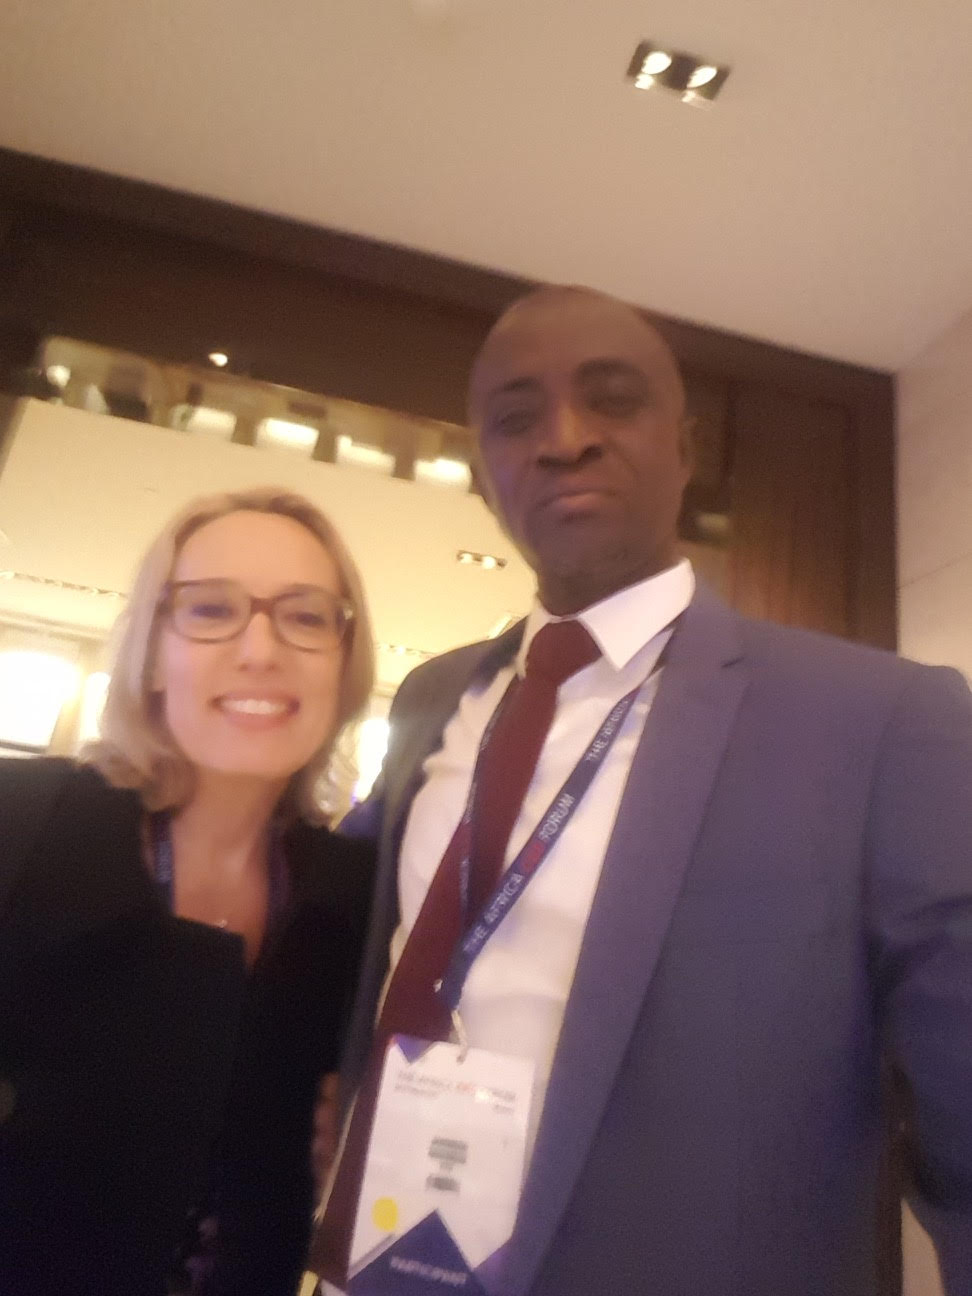 Le journaliste Johnson Mbengue de l'Apix en compagnie de sa consoeur Myriam Mascarello envoyée spéciale de France 24 au AFRICA CEO FORUM de Genève